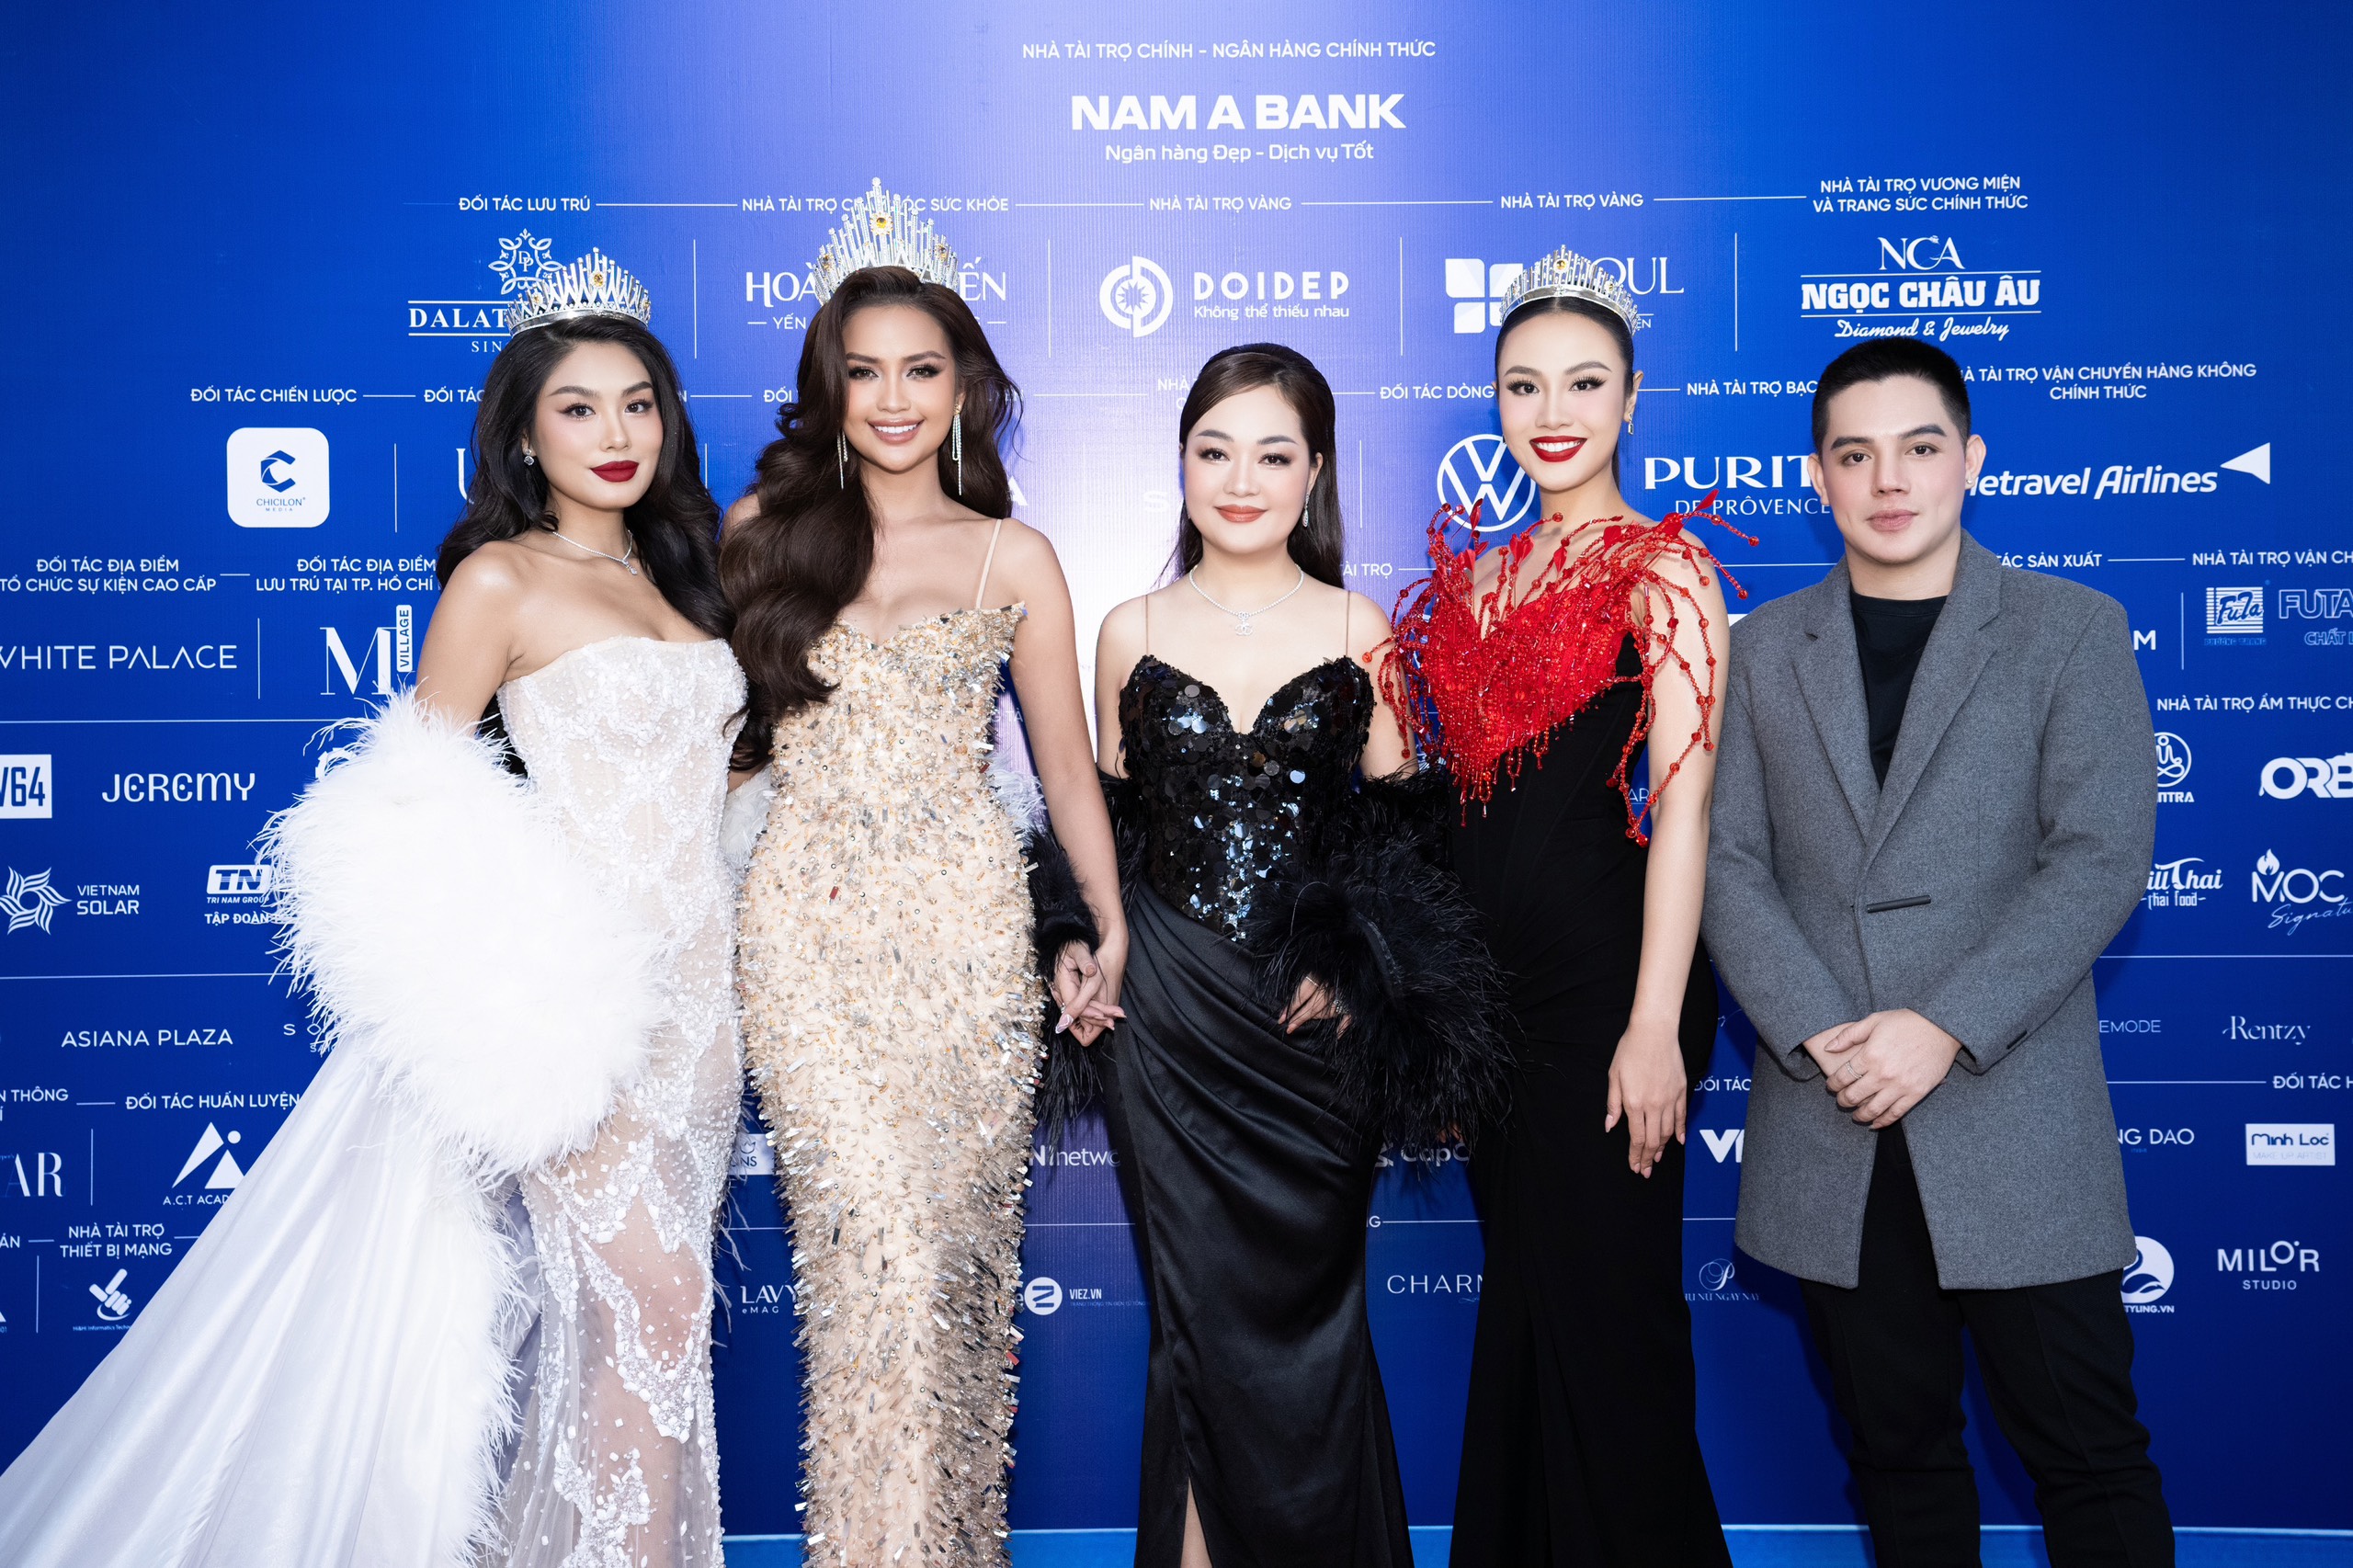 Kim cương Ngọc Châu Âu trở thành nhà tài trợ và chế tác vương miện Hoa hậu Hoàn vũ Việt Nam 2023 - 5